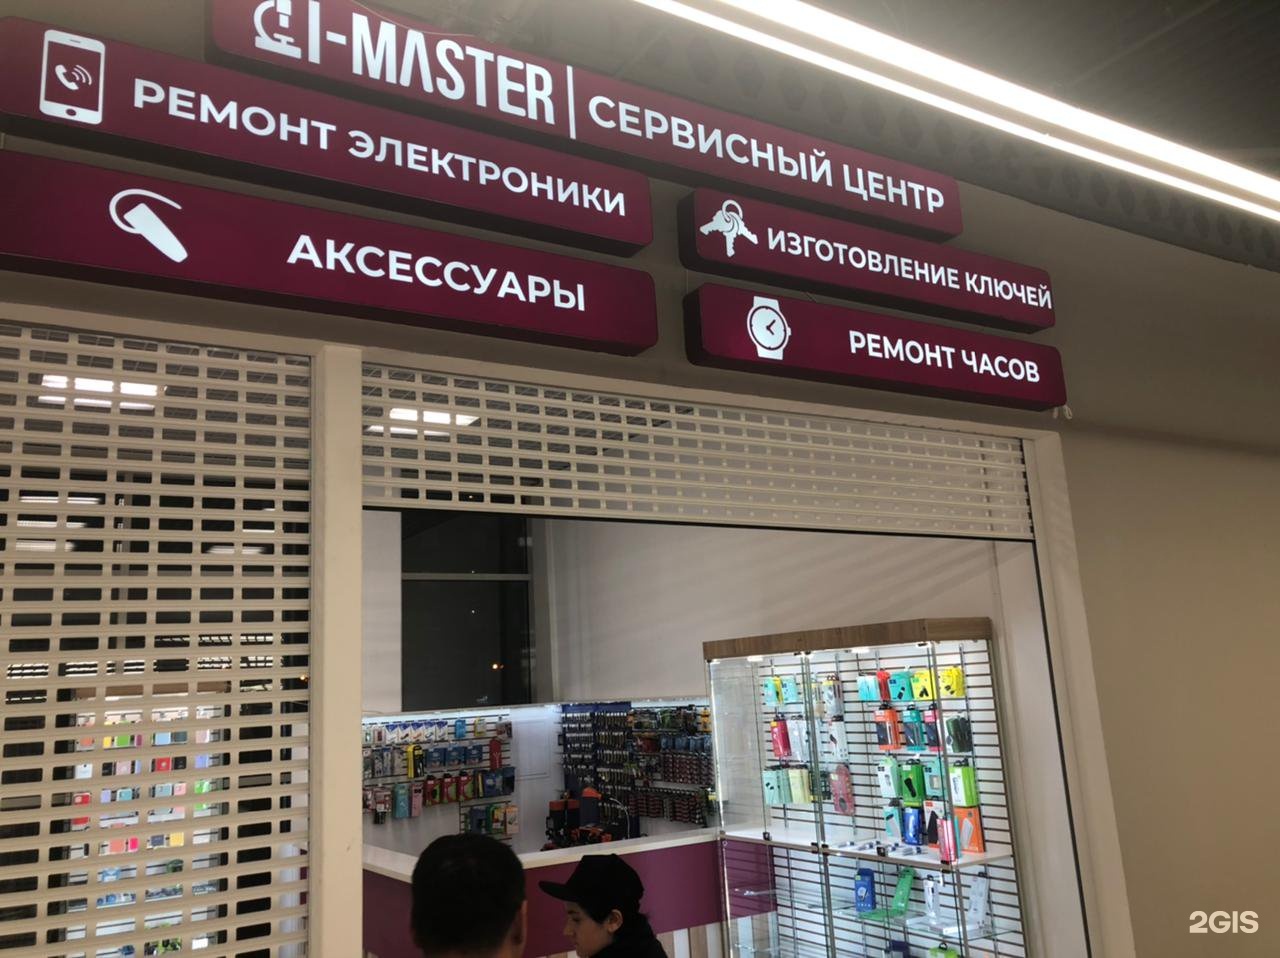 Masters сервисный центр